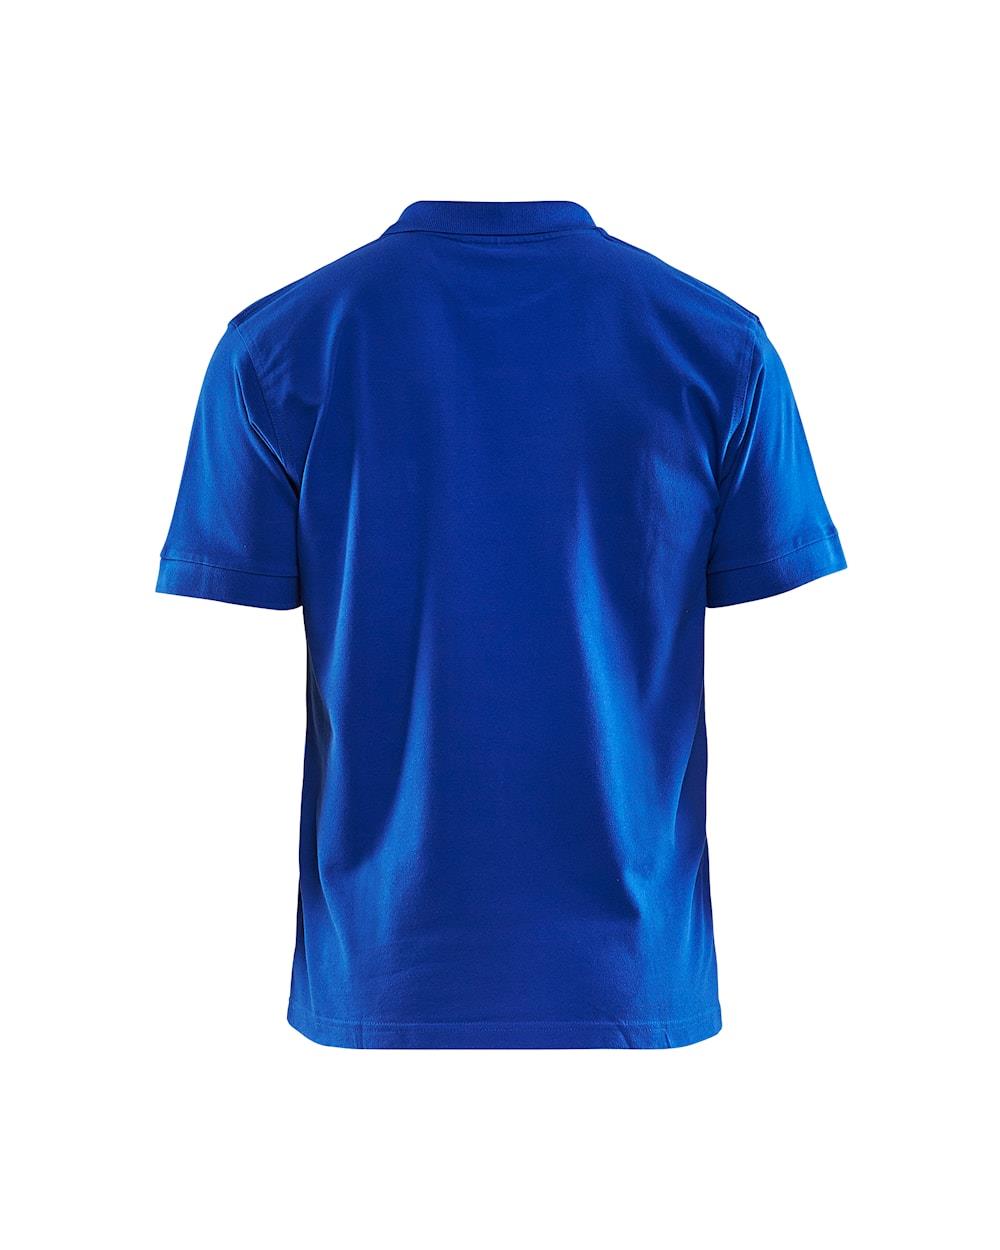 Blaklader cornflower blue men's cotton pique work polo-shirt #3305